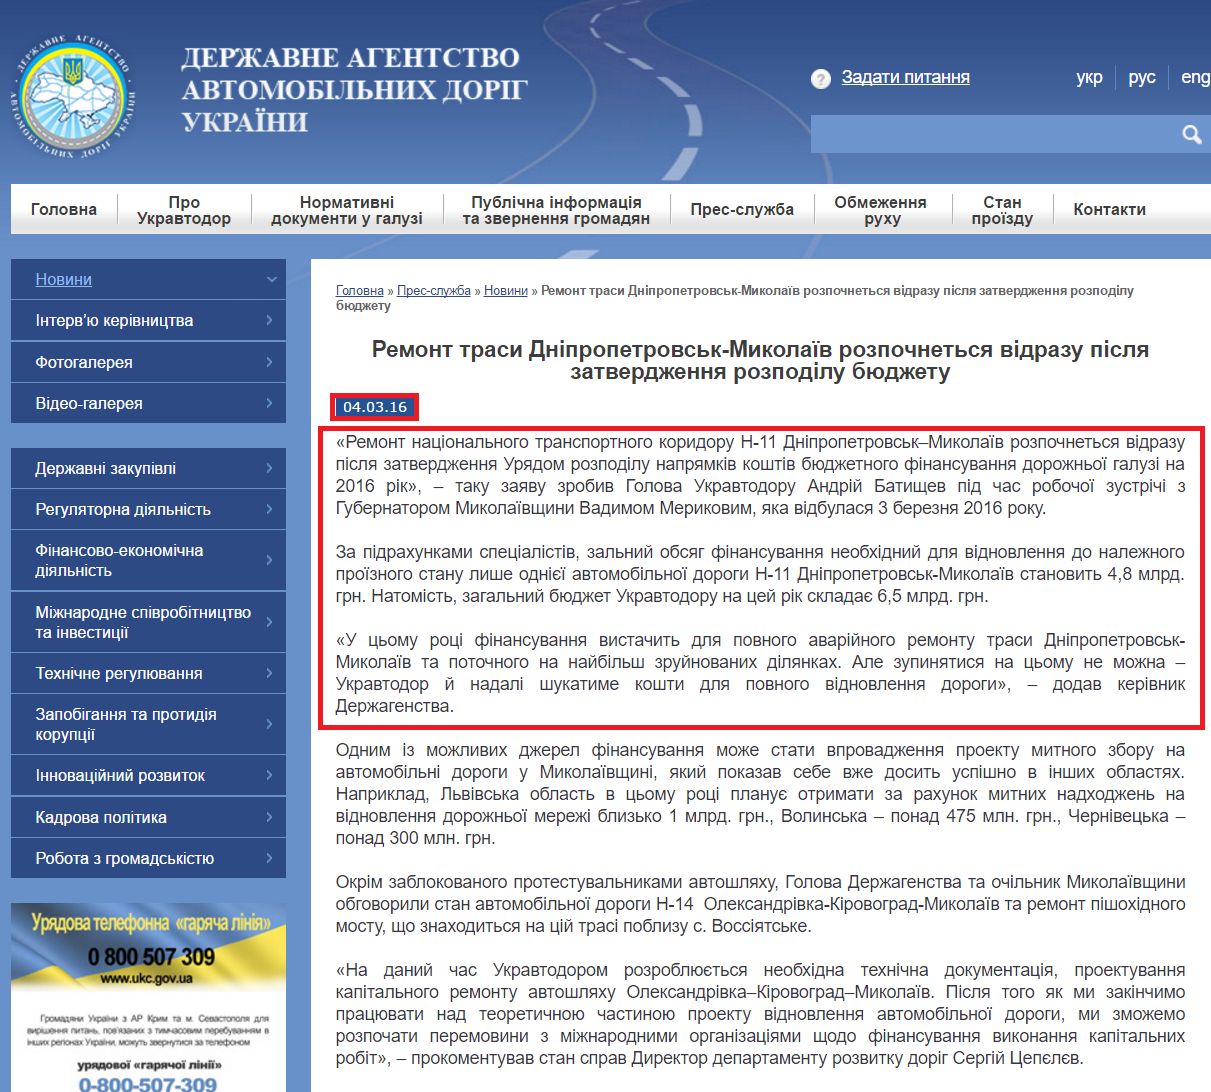 http://www.ukravtodor.gov.ua/novini/%D1%81_remont-trasi-dnipropetrovsk-mikolaiv-rozpochnetsya-vidrazu-pislya-zatverdzhennya-rozpodilu-byudzhetu.html